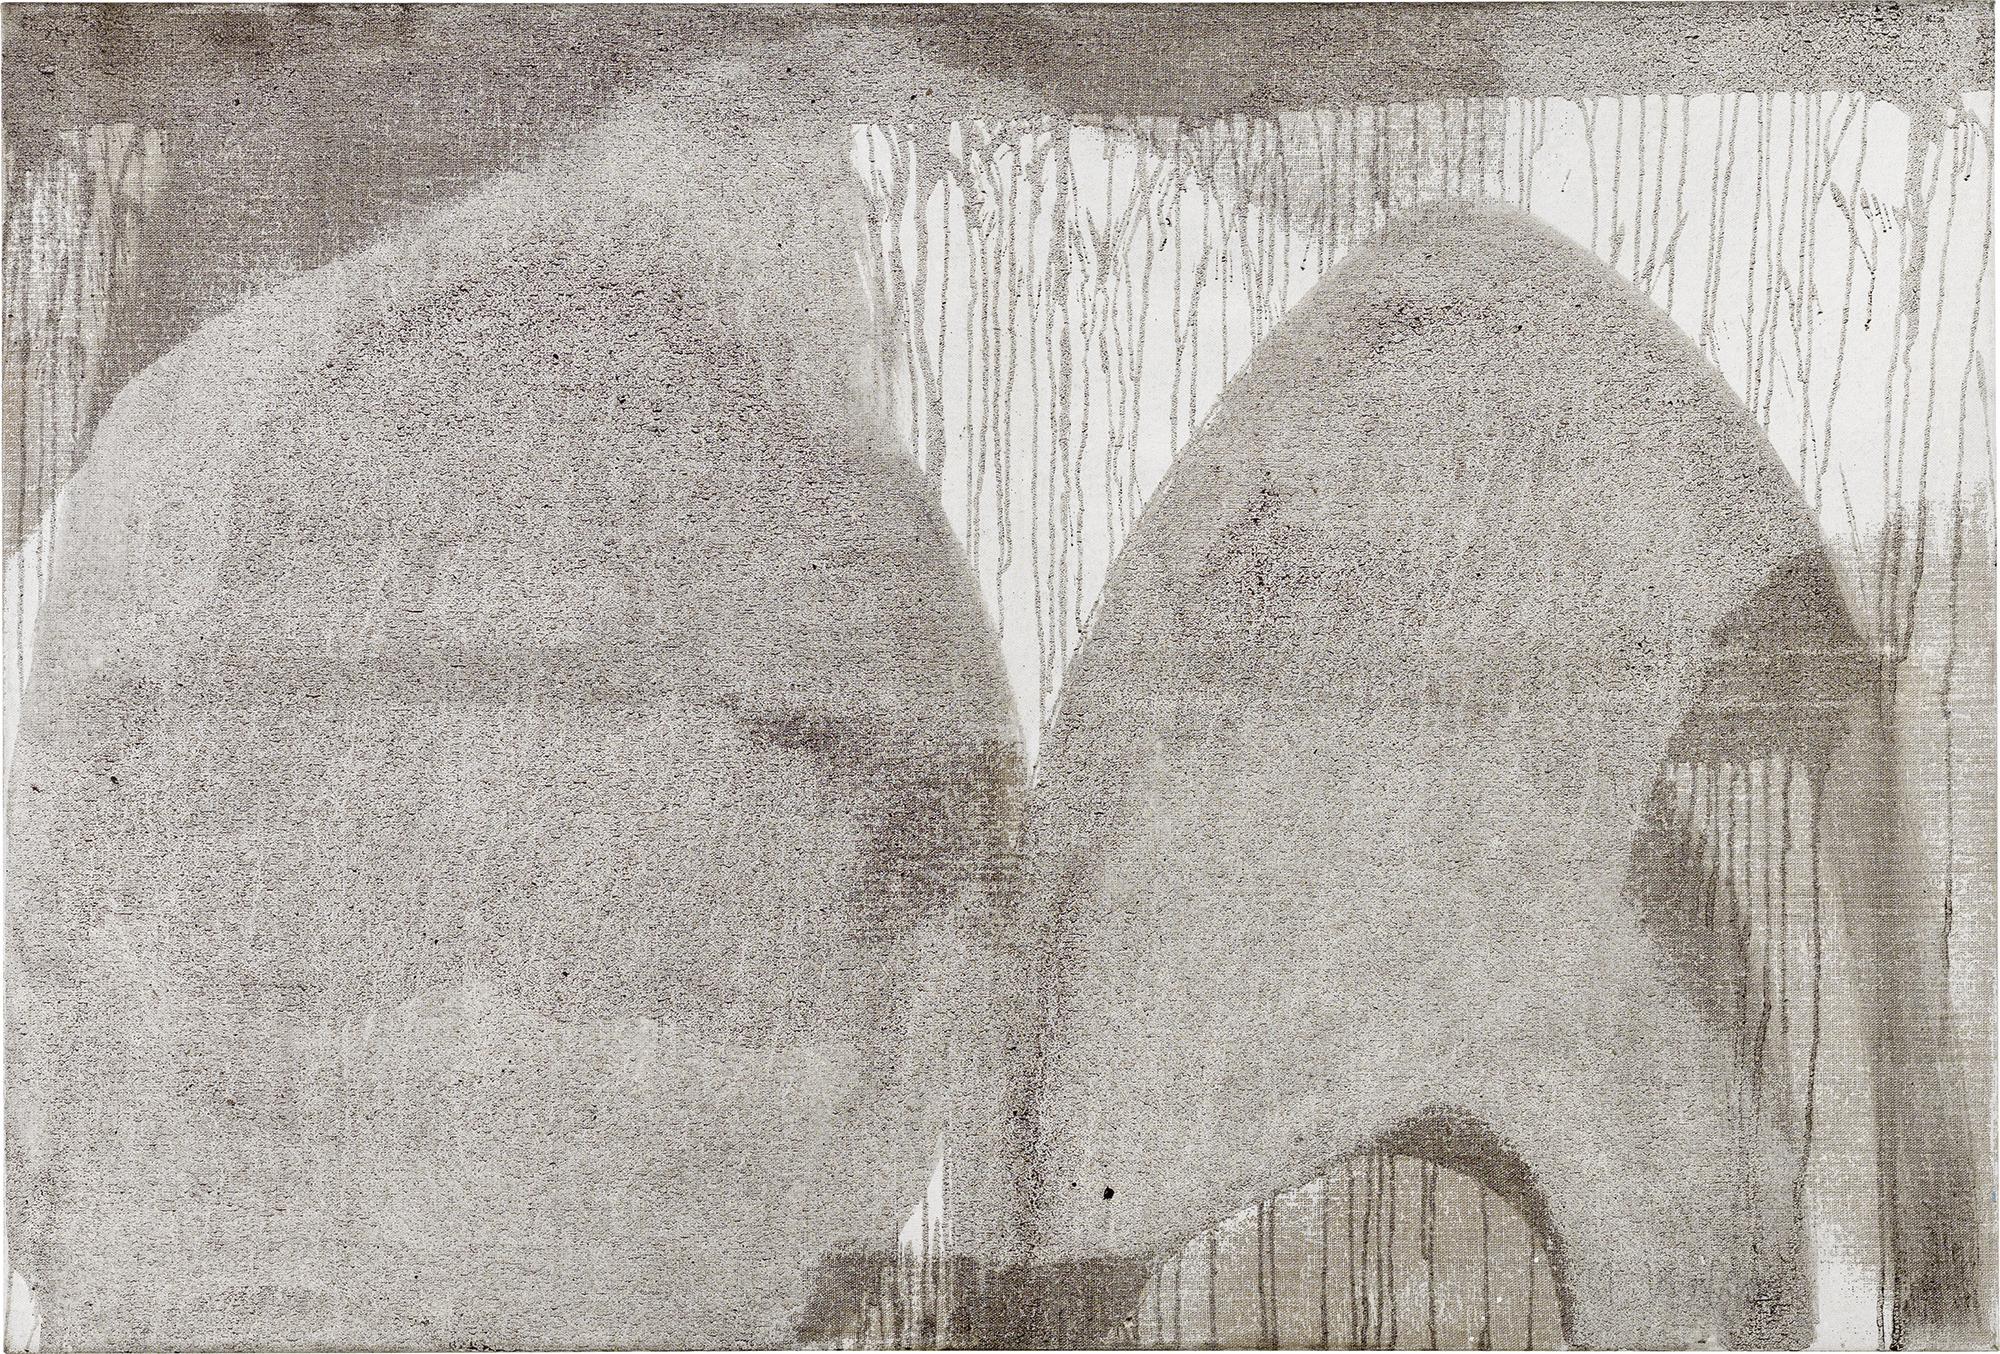 Centrifugal Force  // Asche in Eitempera auf Leinwand // 100 x 150 cm // 2014